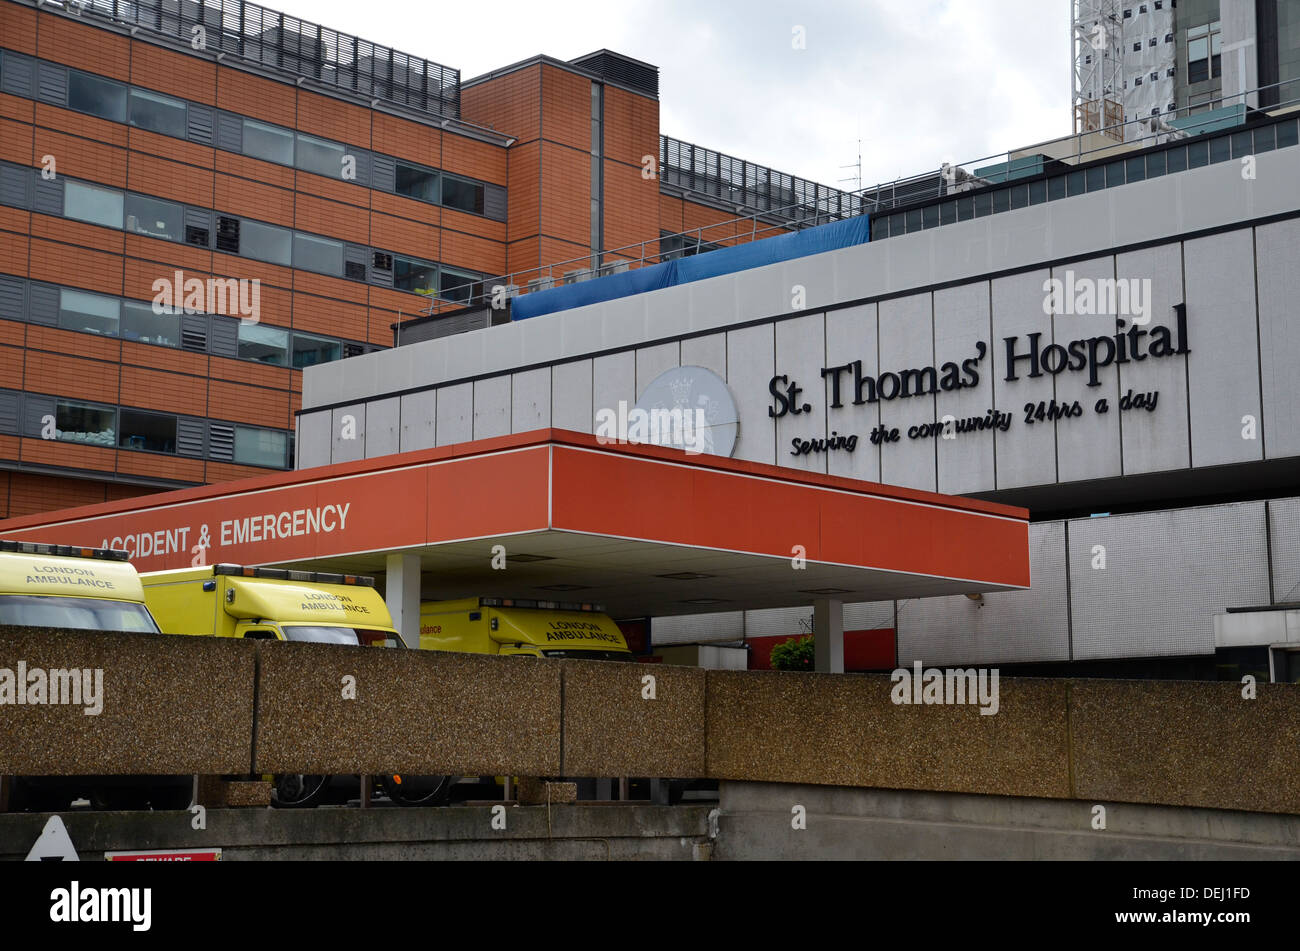 St. Thomas's Hospital in Lambeth, London Stock Photo